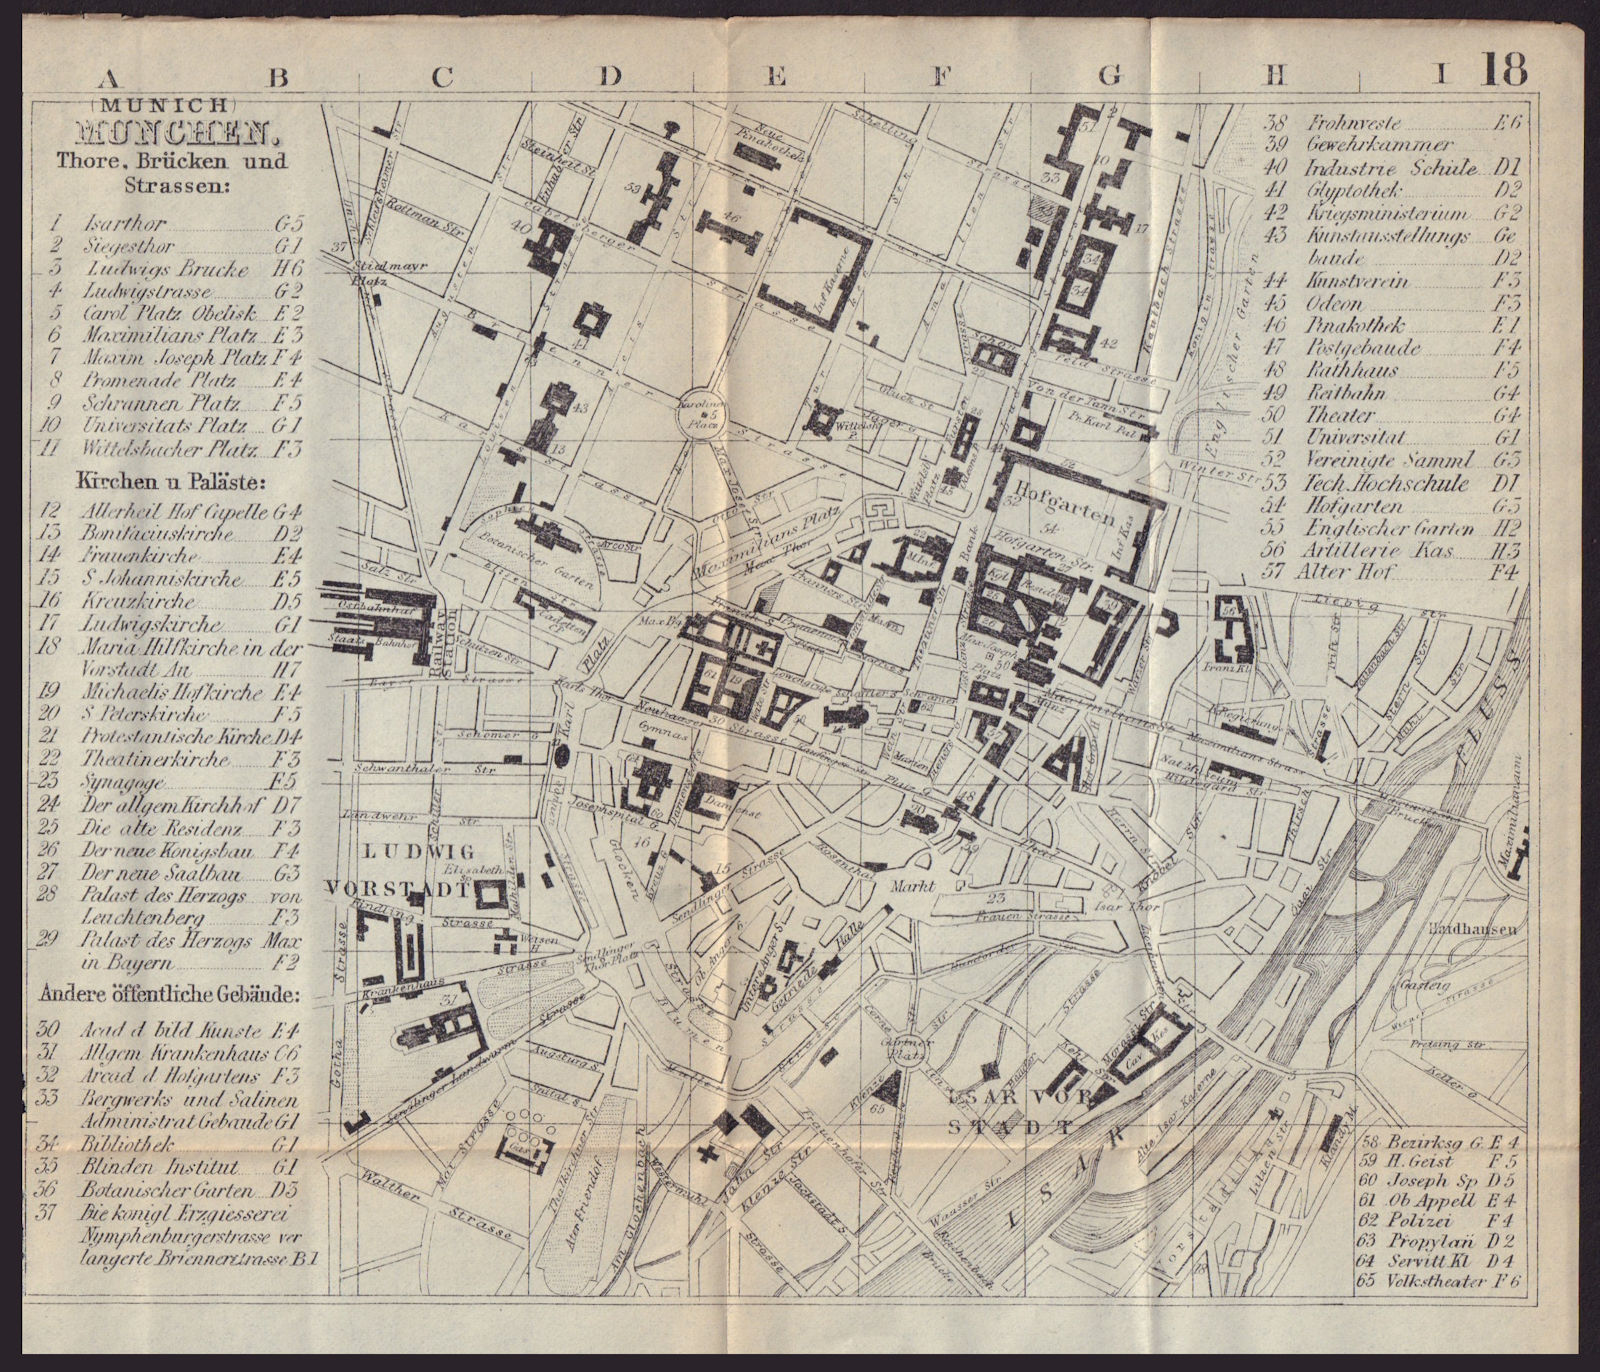 MUNICH MÜNCHEN MUNCHEN antique town plan city map. Germany. BRADSHAW 1893